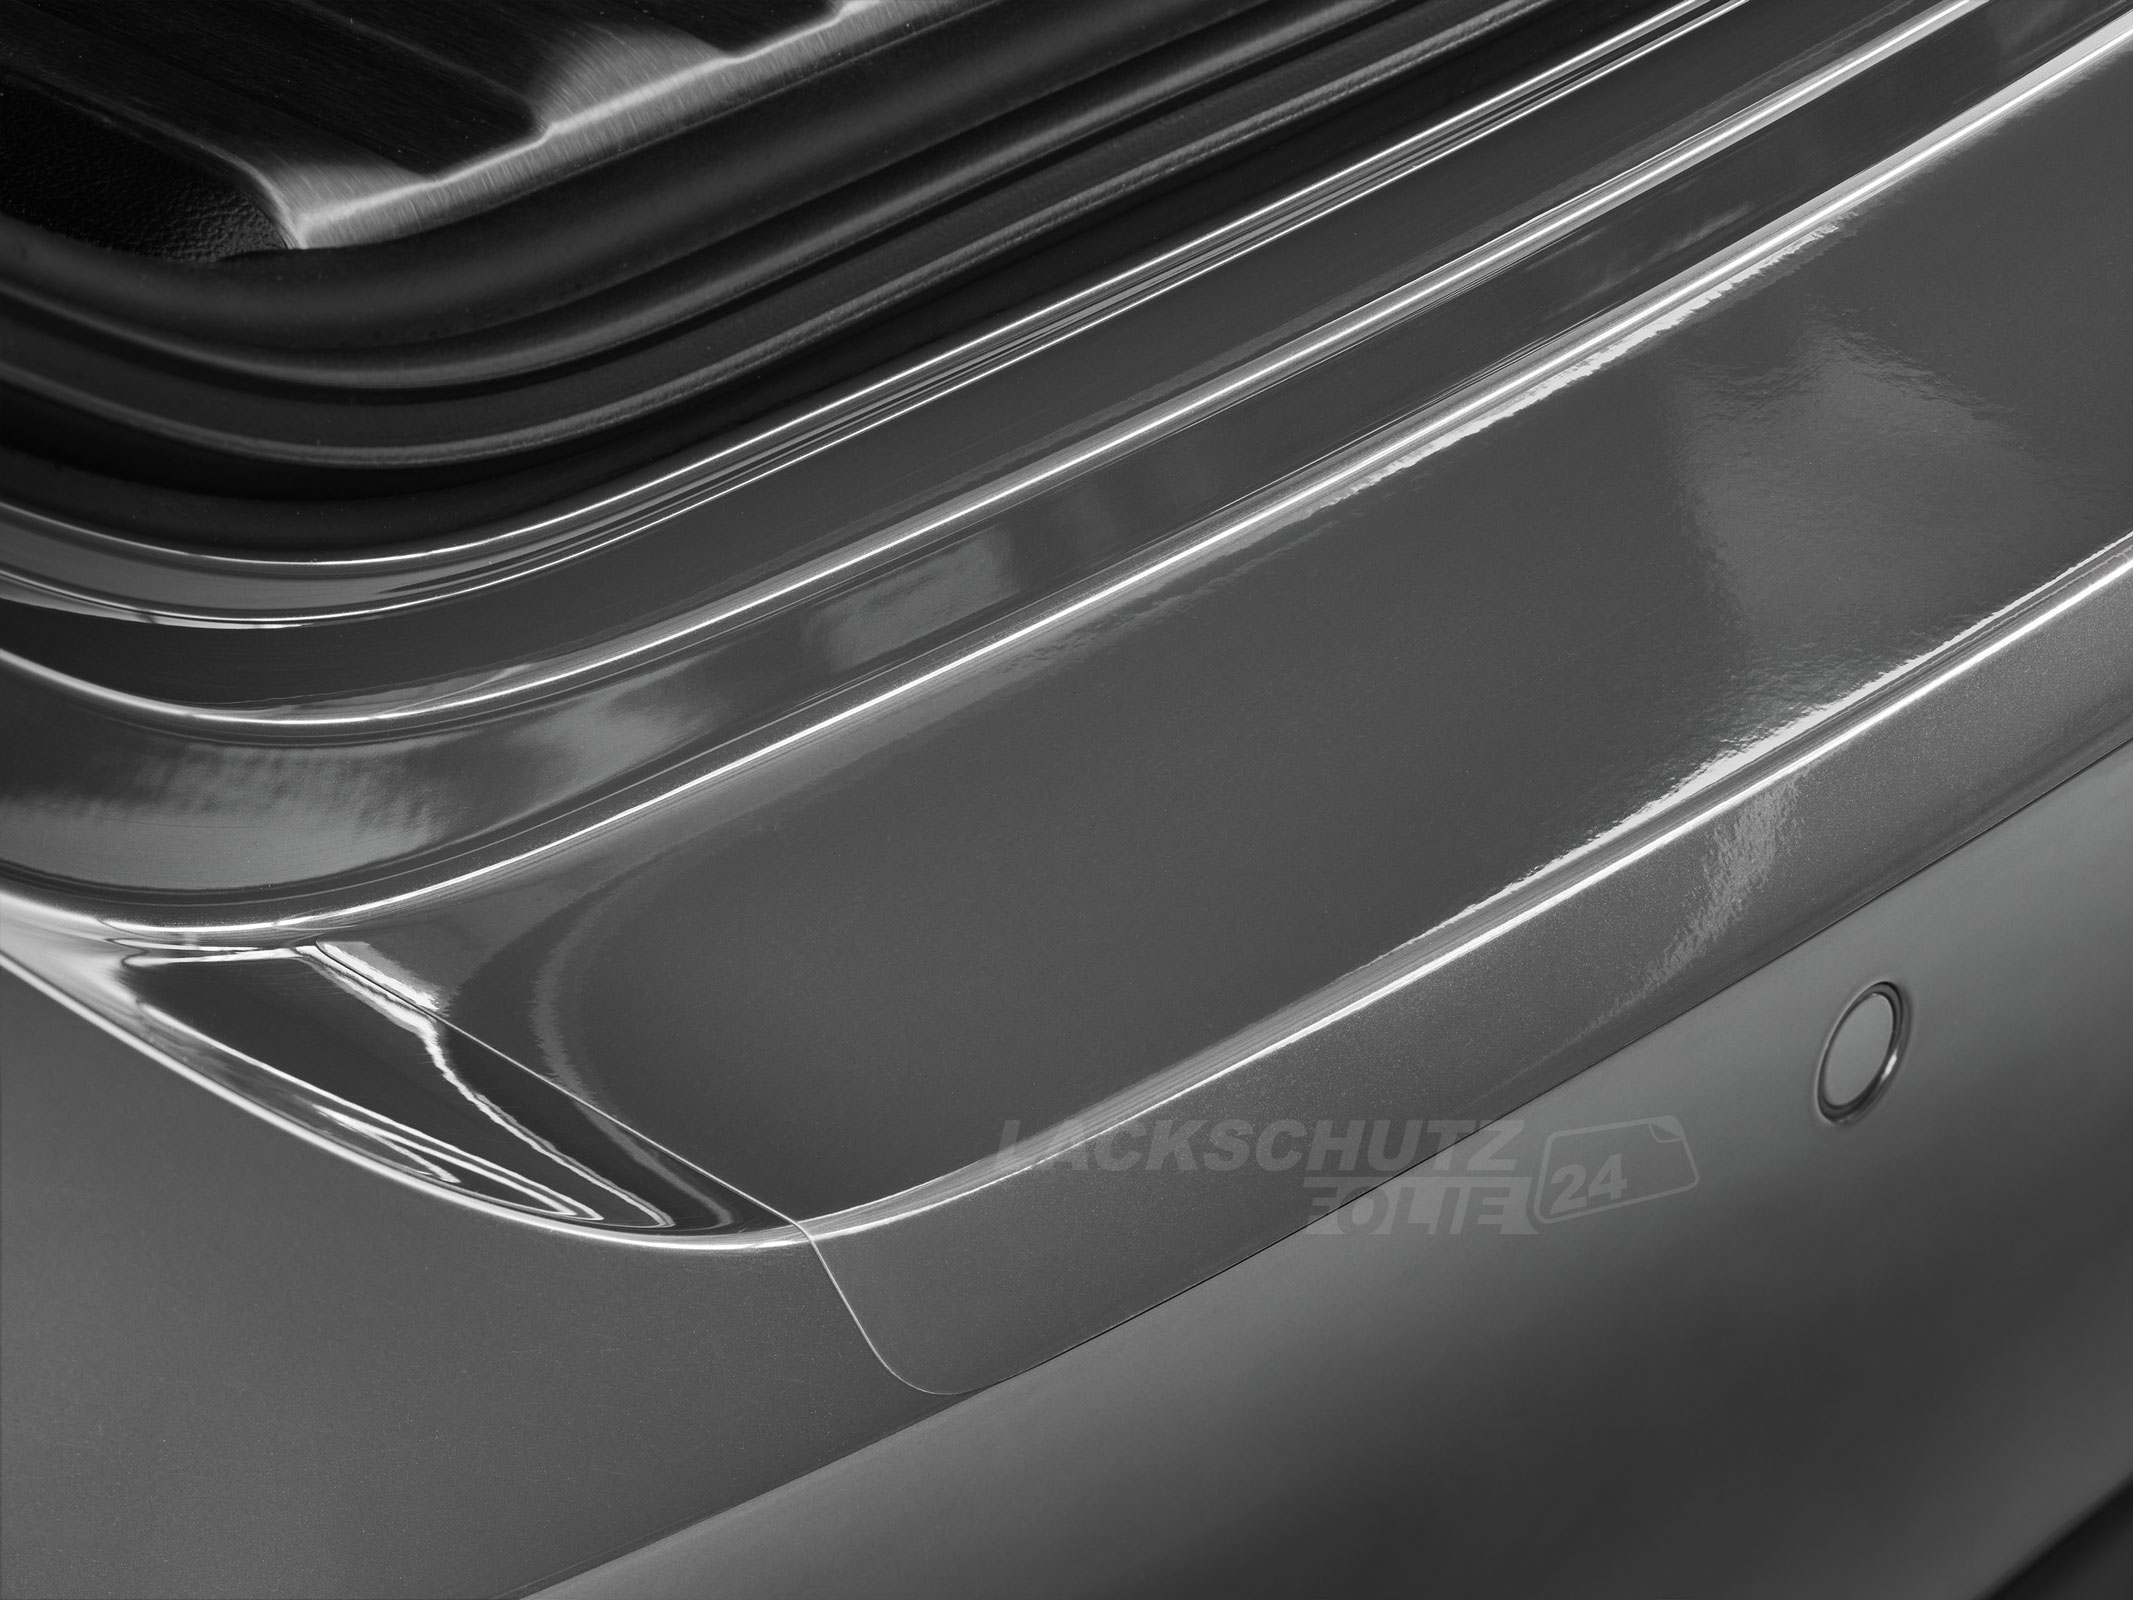 Ladekantenschutzfolie - Transparent Glatt Hochglänzend für Mercedes-Benz E-Klasse Limousine Typ W212, ab BJ 2009-2016